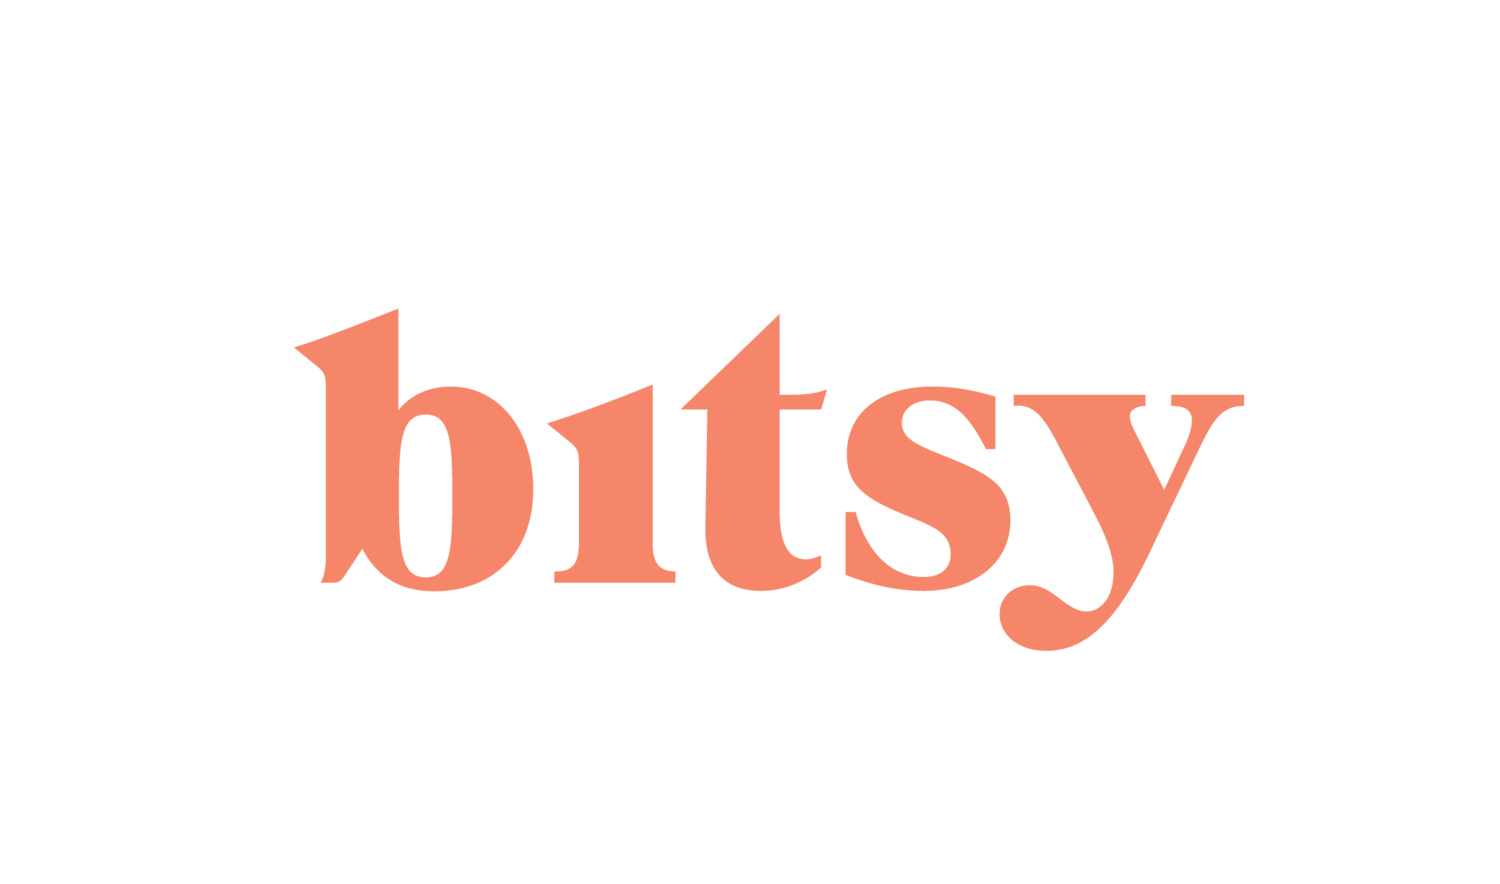 Studio Bitsy